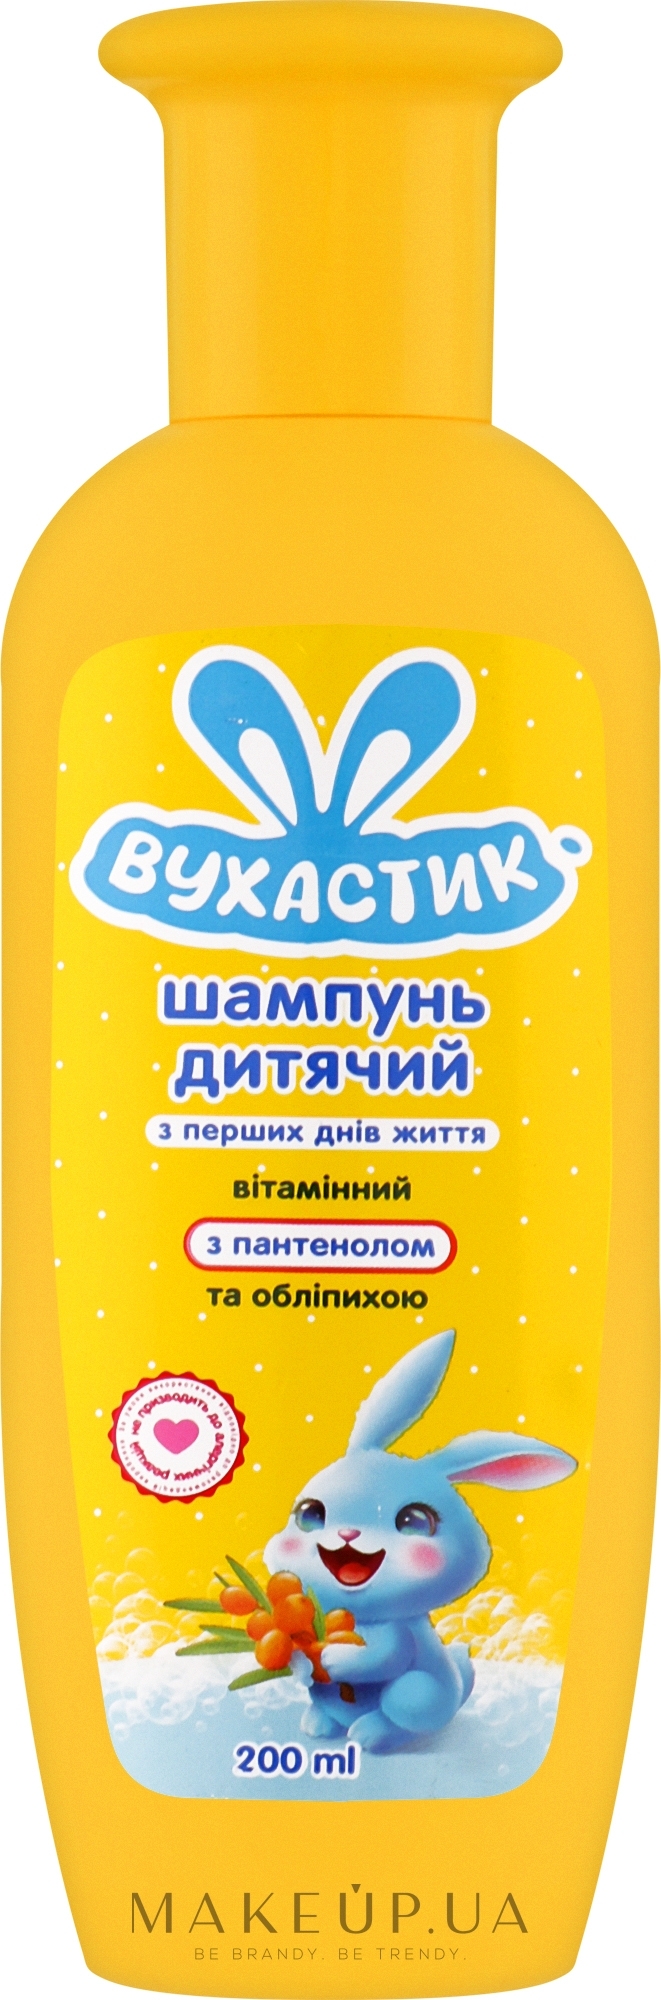 Шампунь детский витаминный с облепихой и пантенолом, флип-топ - Вухастик — фото 200ml